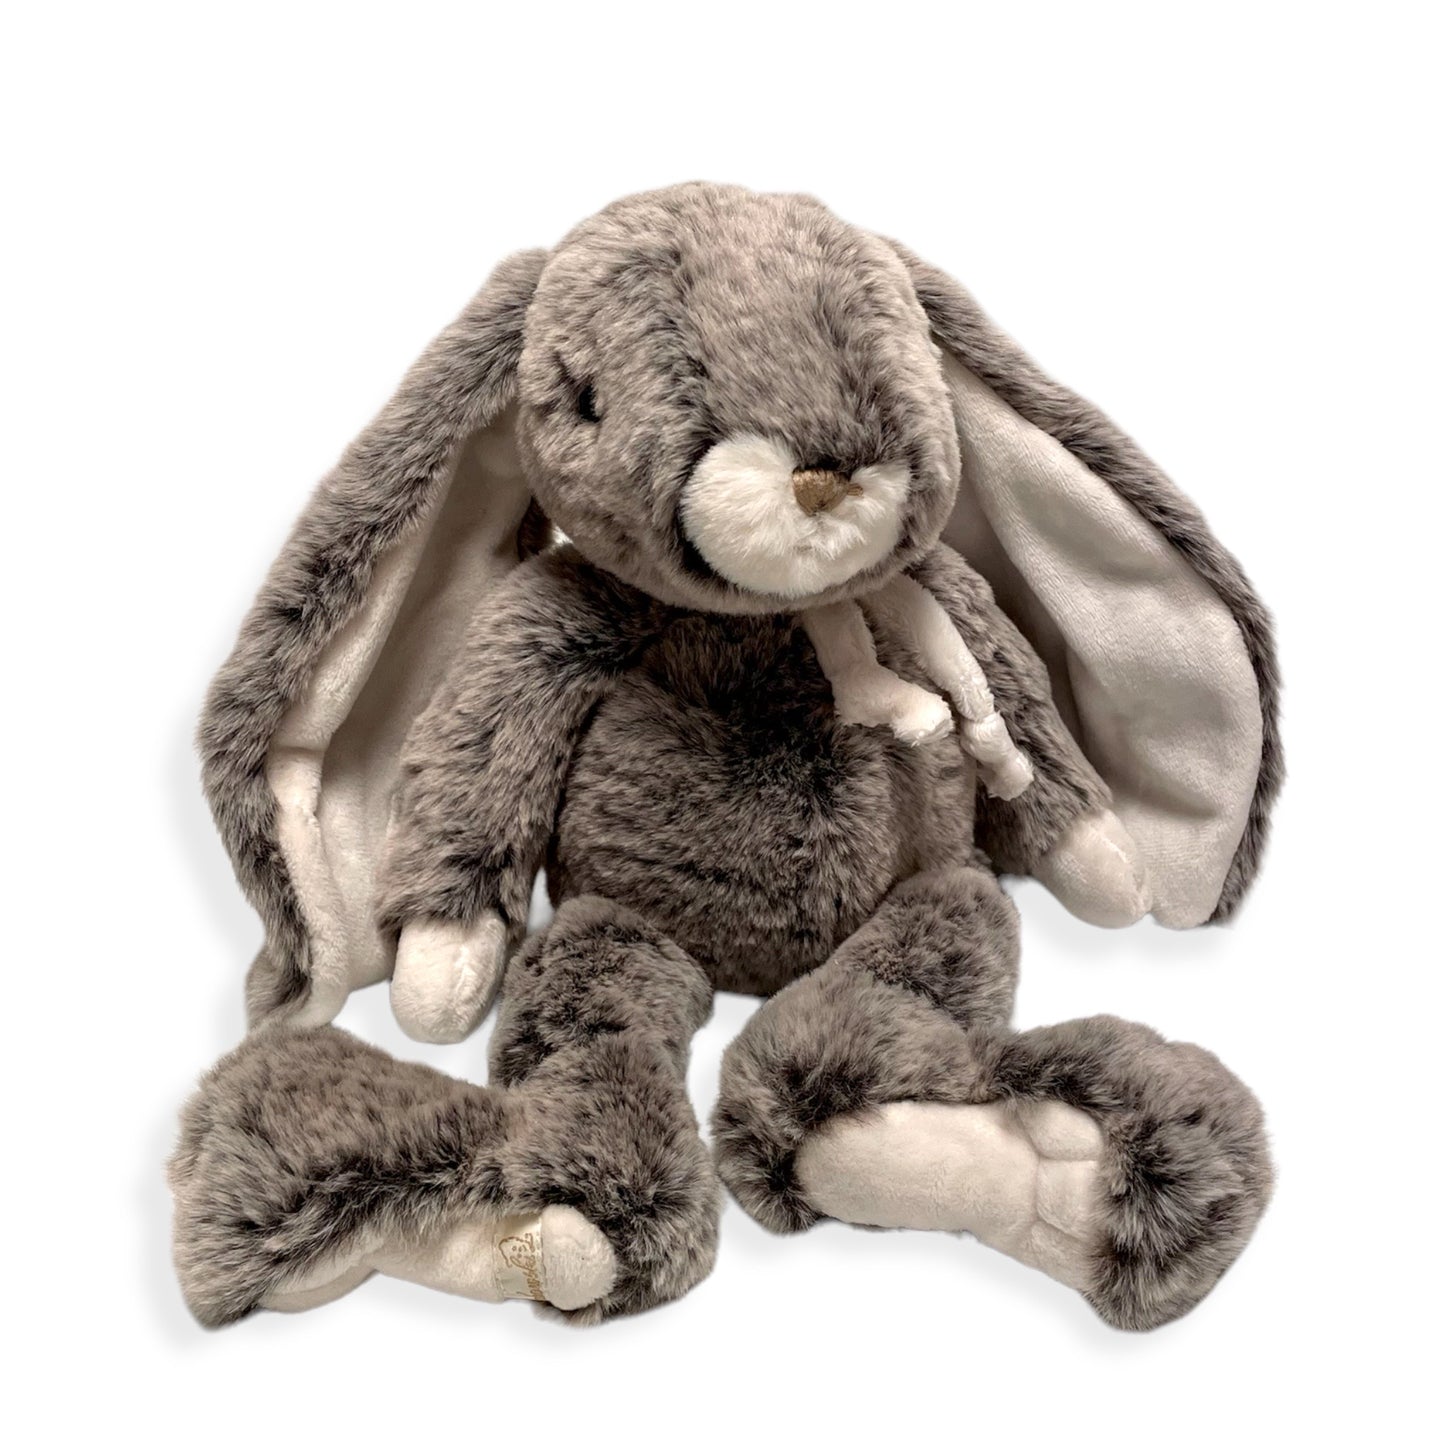 Mjuk kanin med namn broderat i örat. Kaninen är ganska stor och extremt mjuk och gosig. Gyllene Tråden broderar barnets namn i örat på beställning.